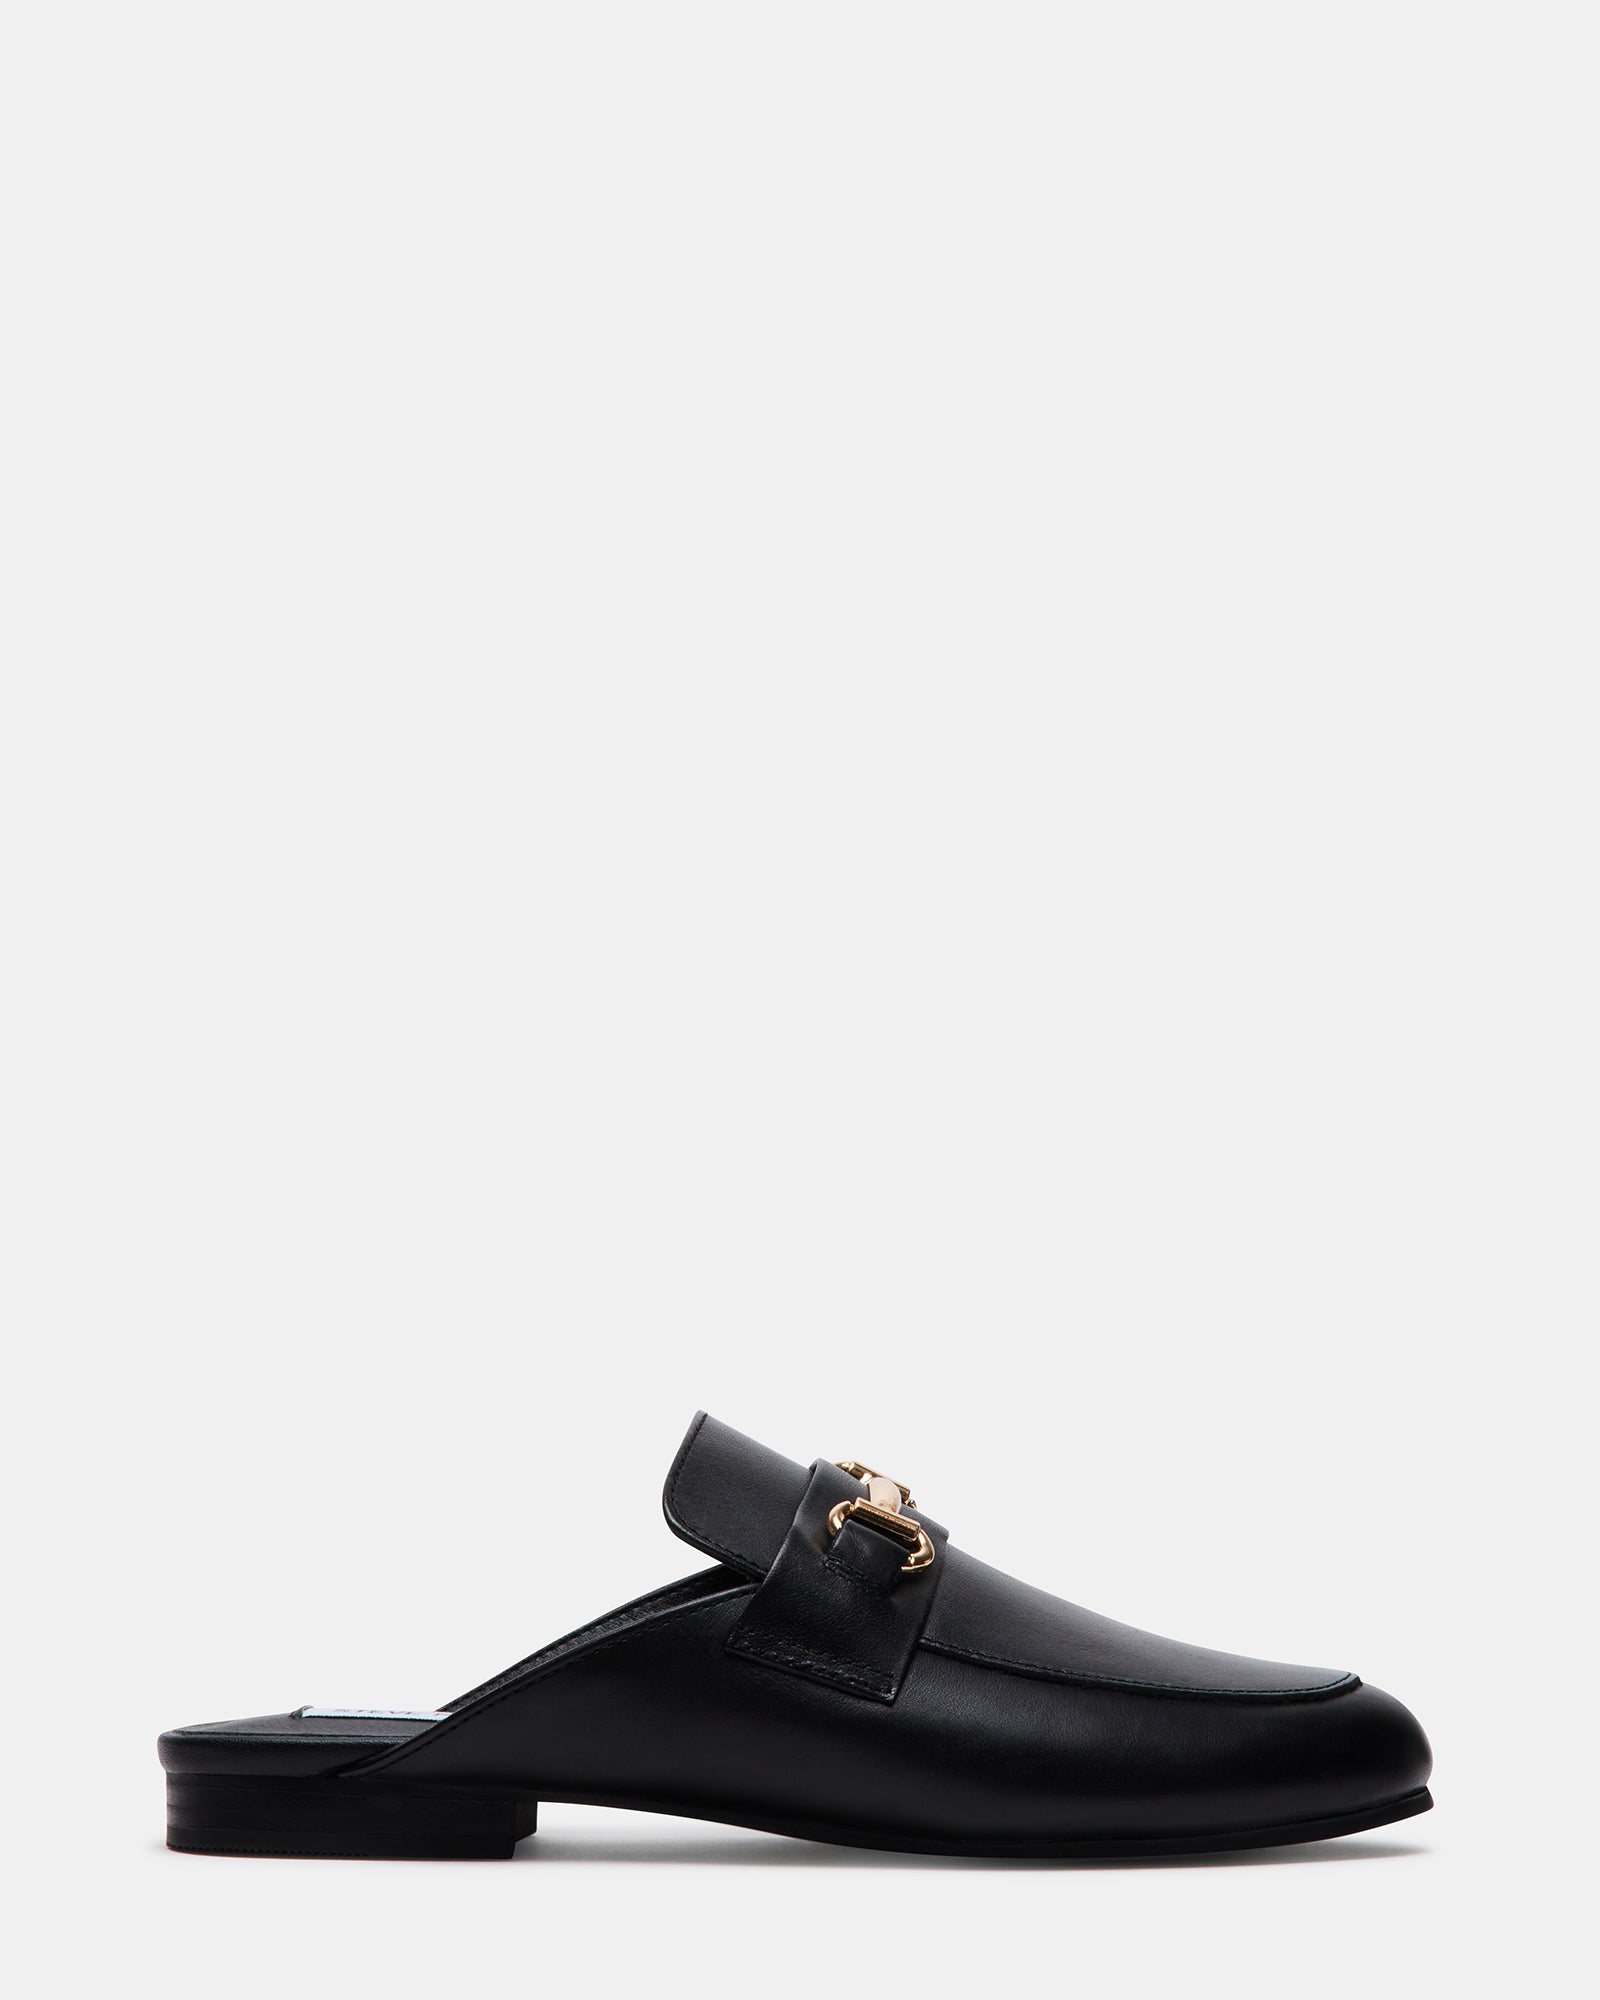 Shop Louis Vuitton Men's Loafers & Slip-ons Bi-color